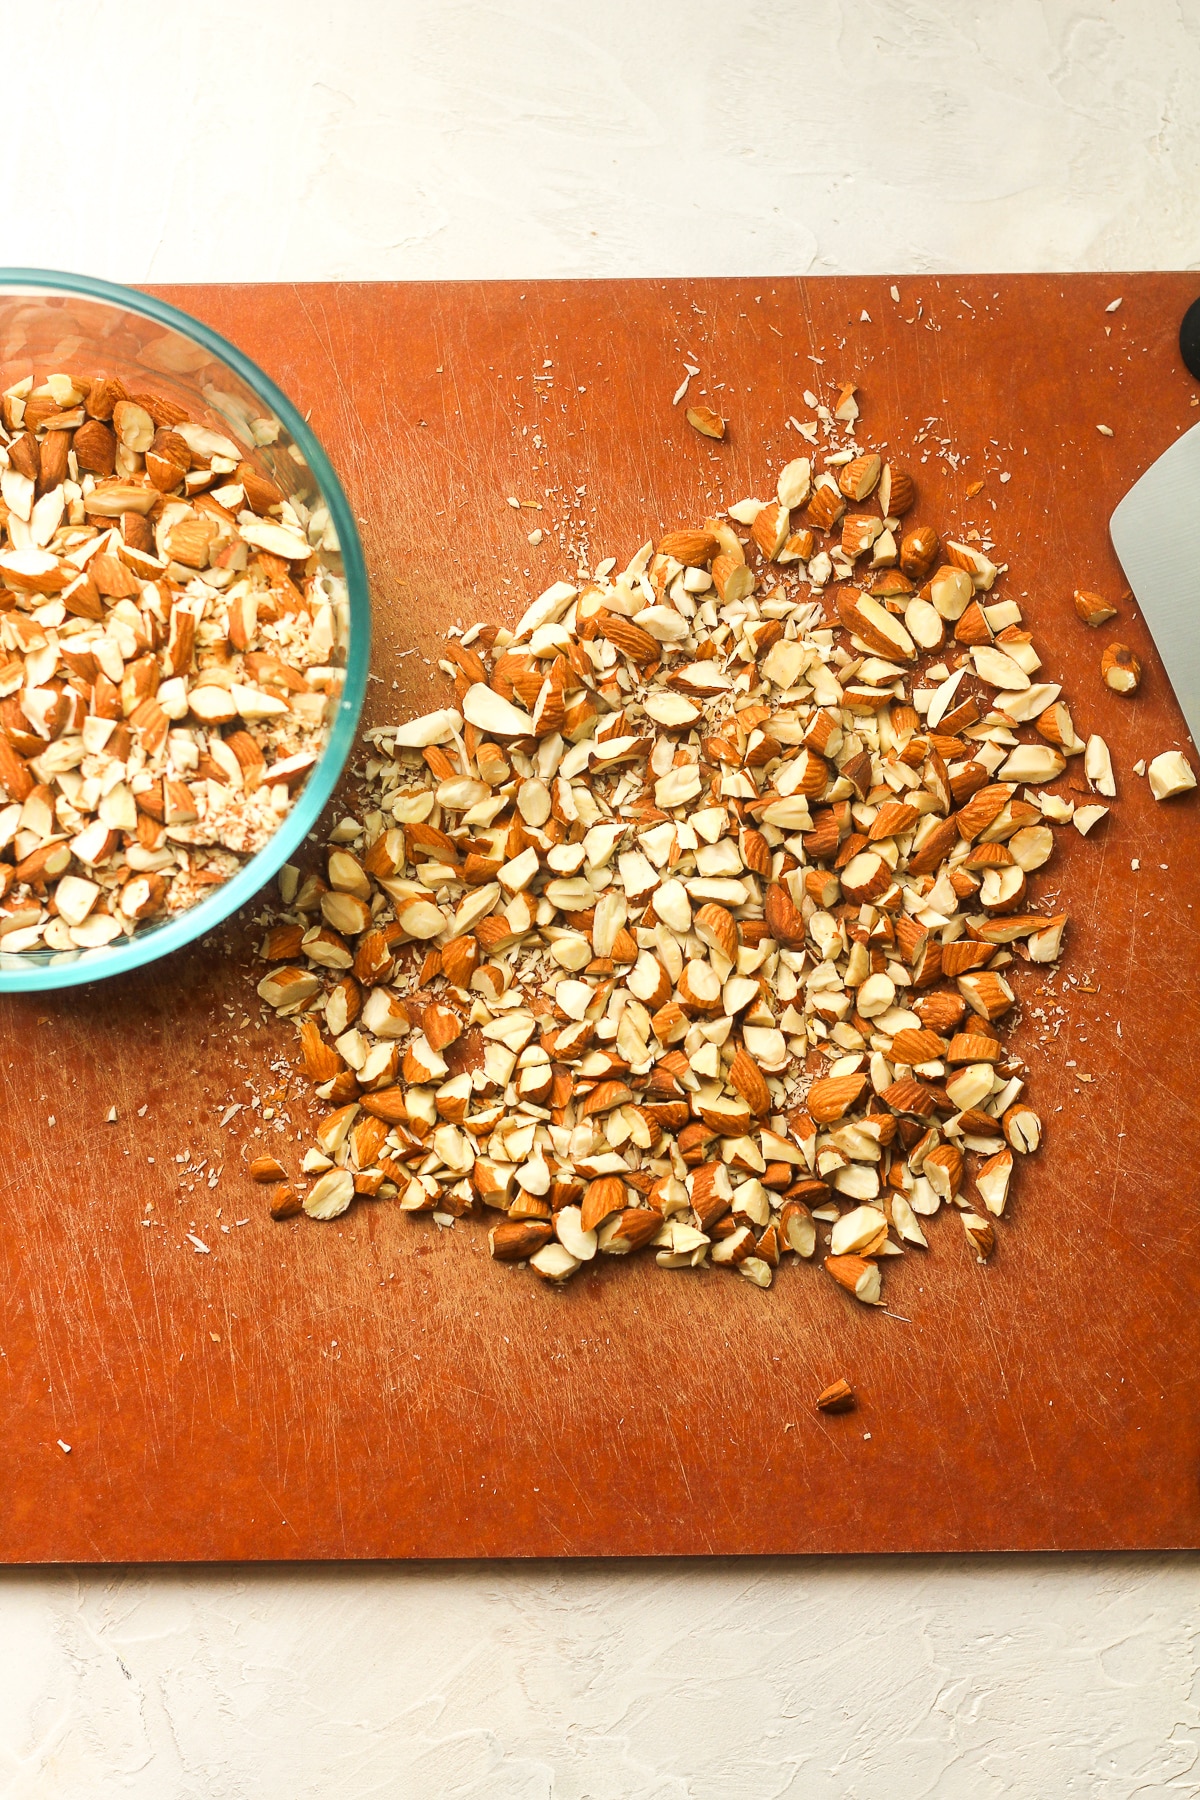 A cutting board of chopped almonds.